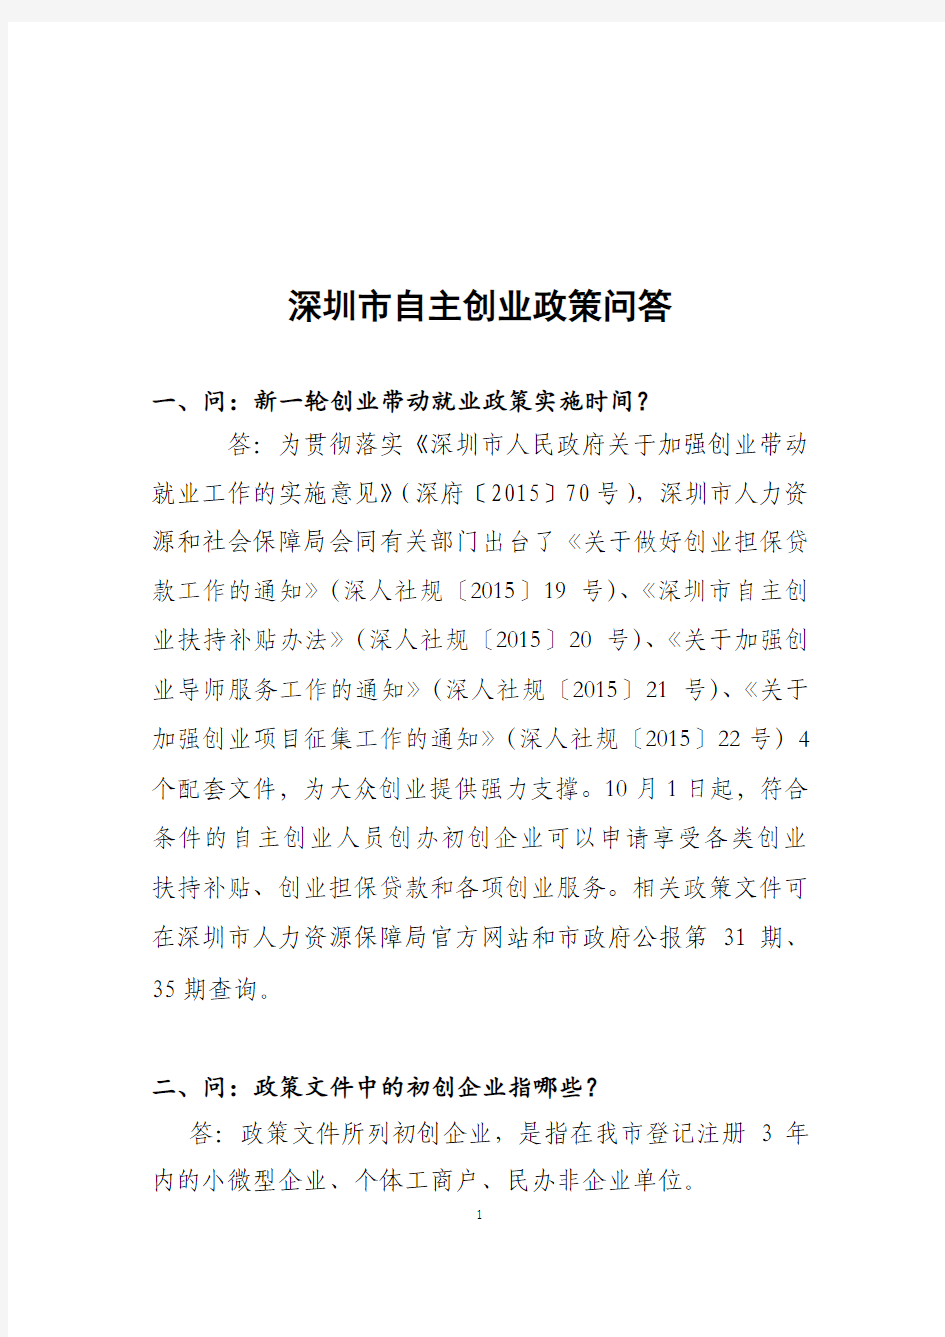 2015年10月深圳市自主创业政策问答